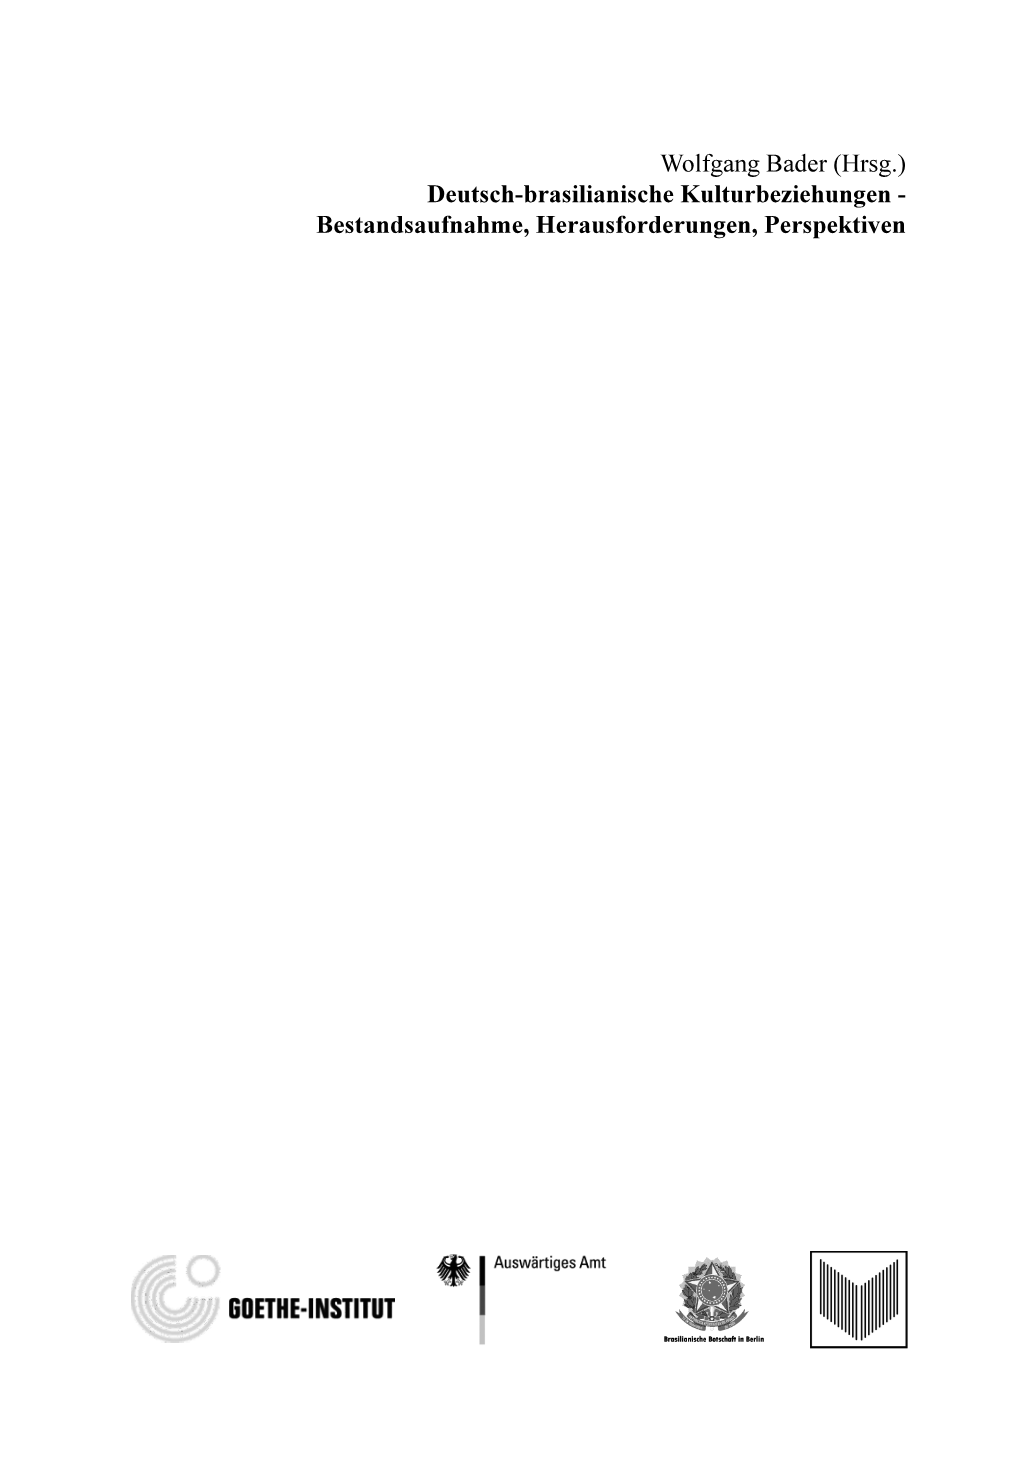 (Hrsg.) Deutsch-Brasilianische Kulturbeziehungen - Bestandsaufnahme, Herausforderungen, Perspektiven 00-Titelei.Qxd 07/07/2010 15:00 Page 2